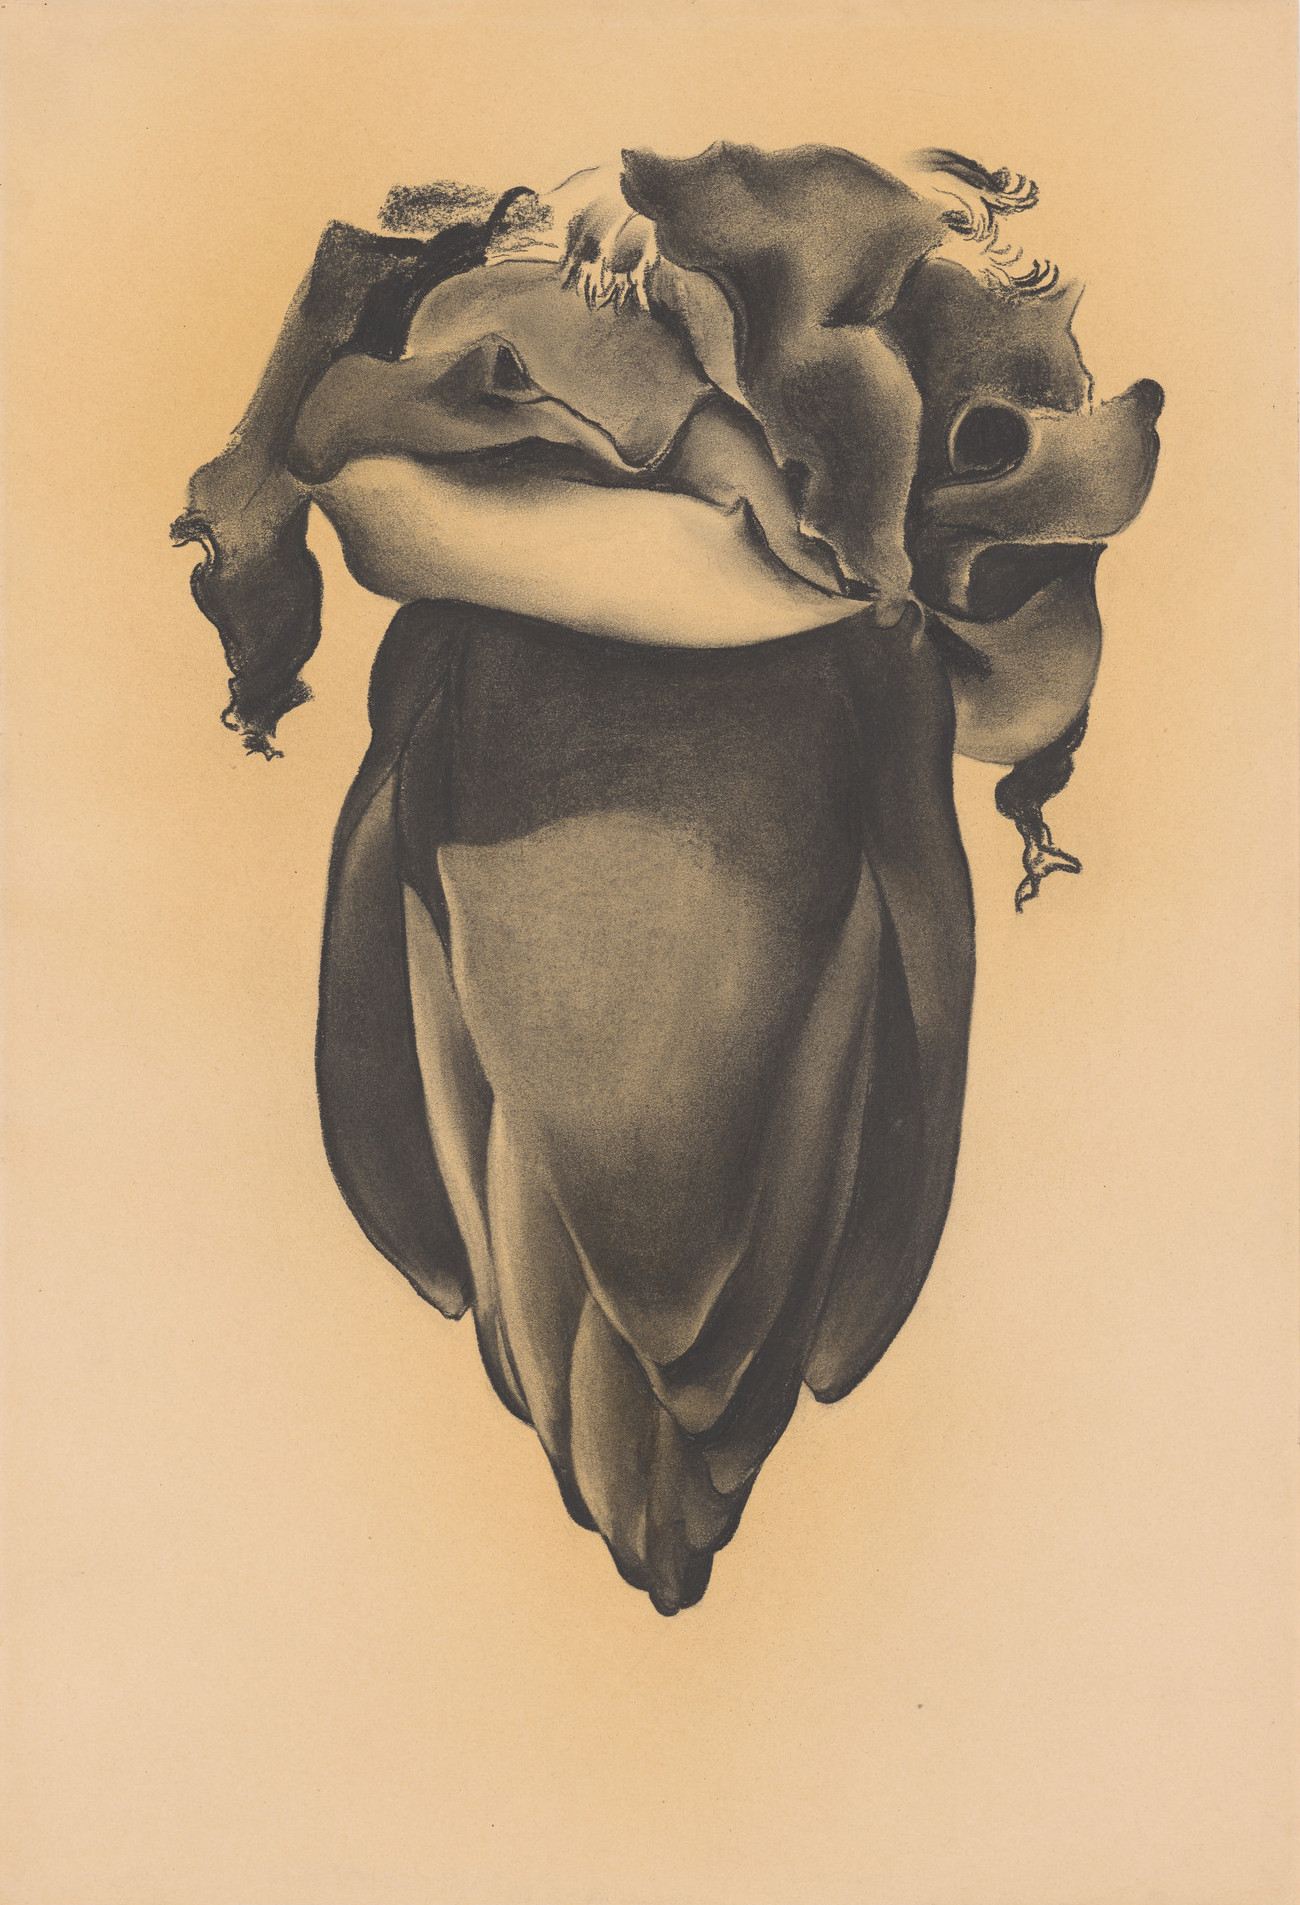 Georgia O'Keeffe. Banana Flower. 1934. Source: MoMA